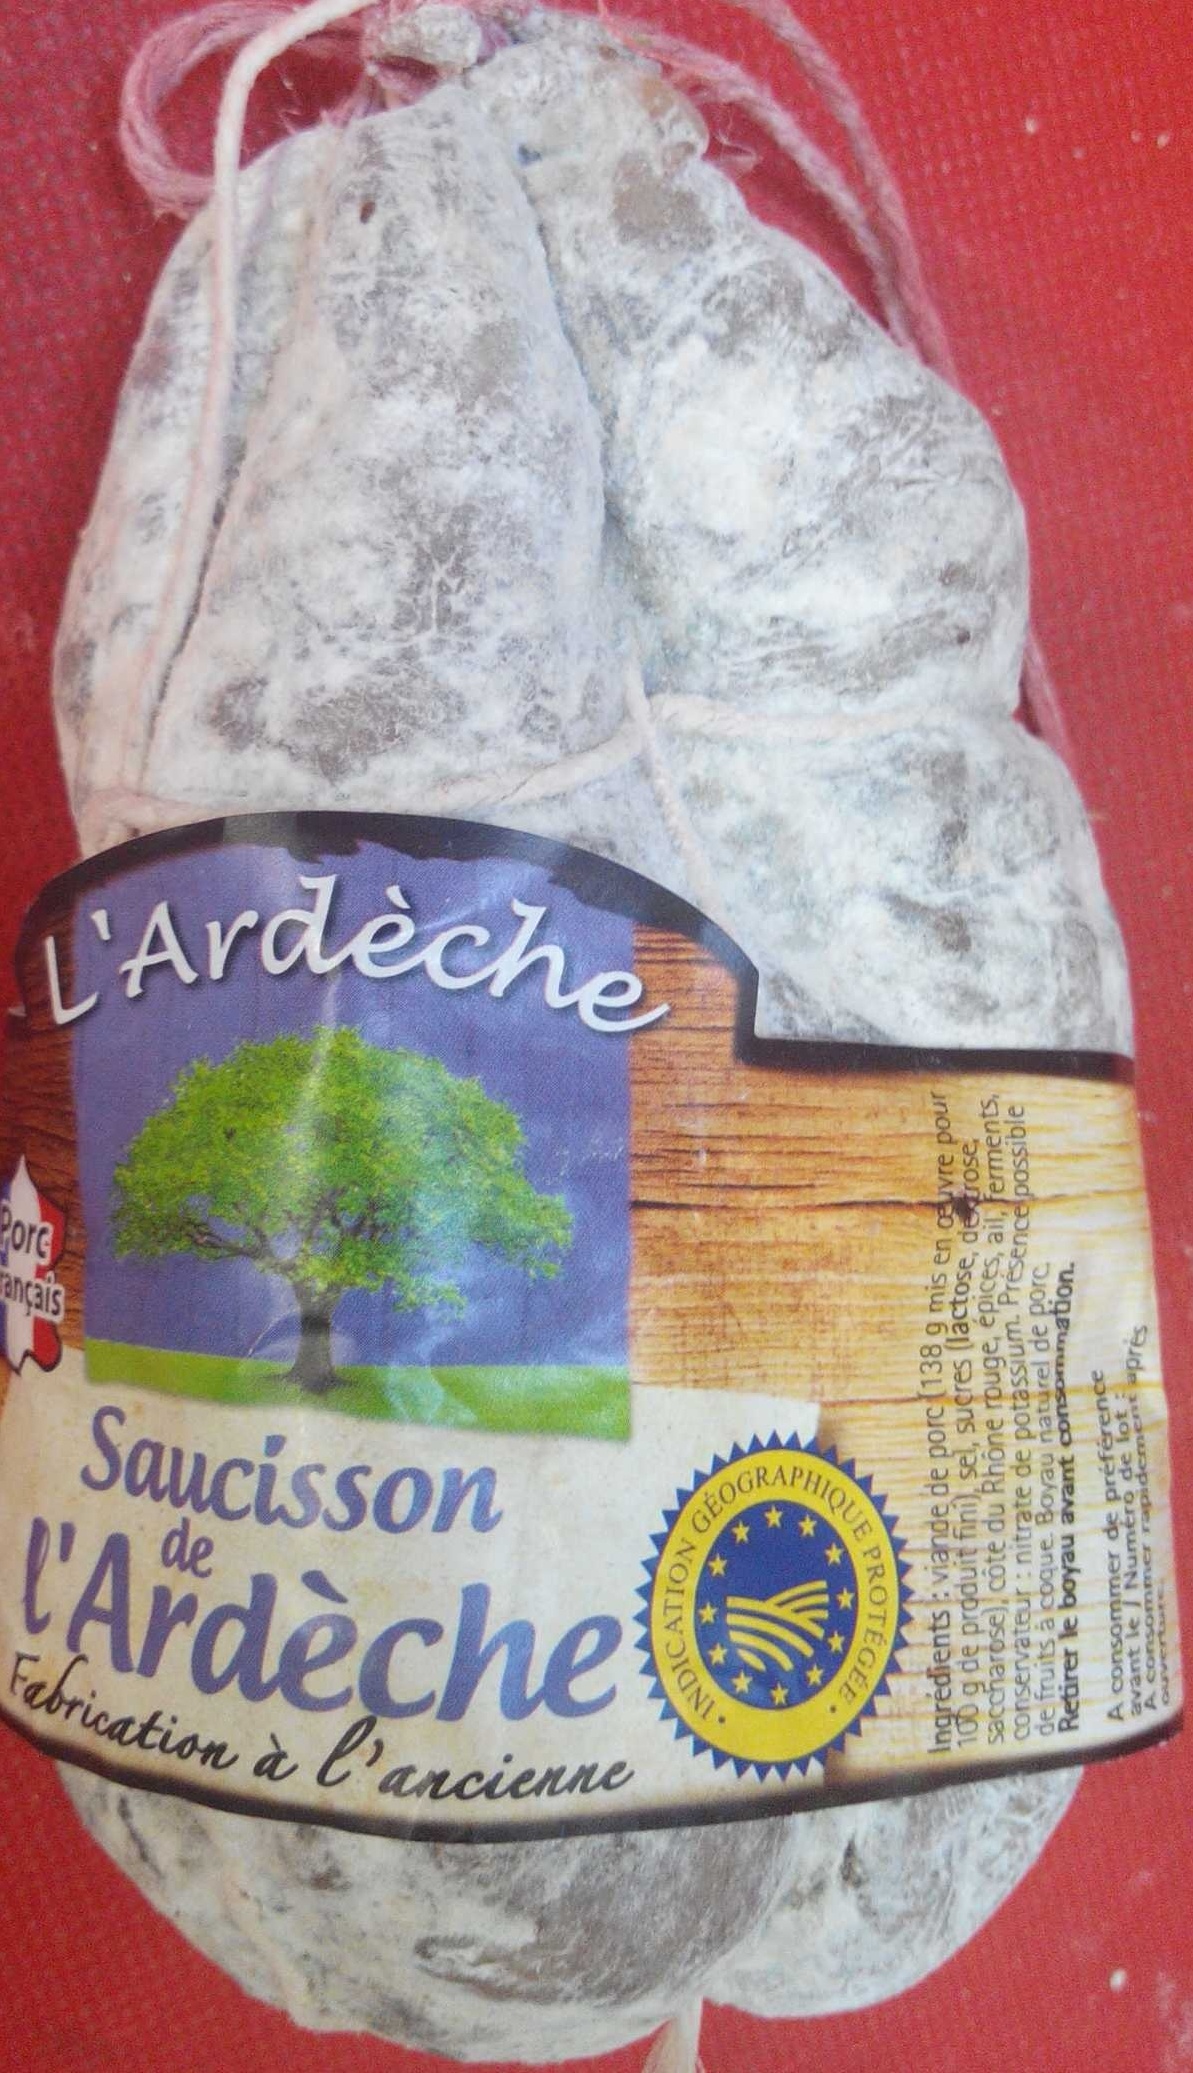 Saucisson de l'Ardèche - Product - fr